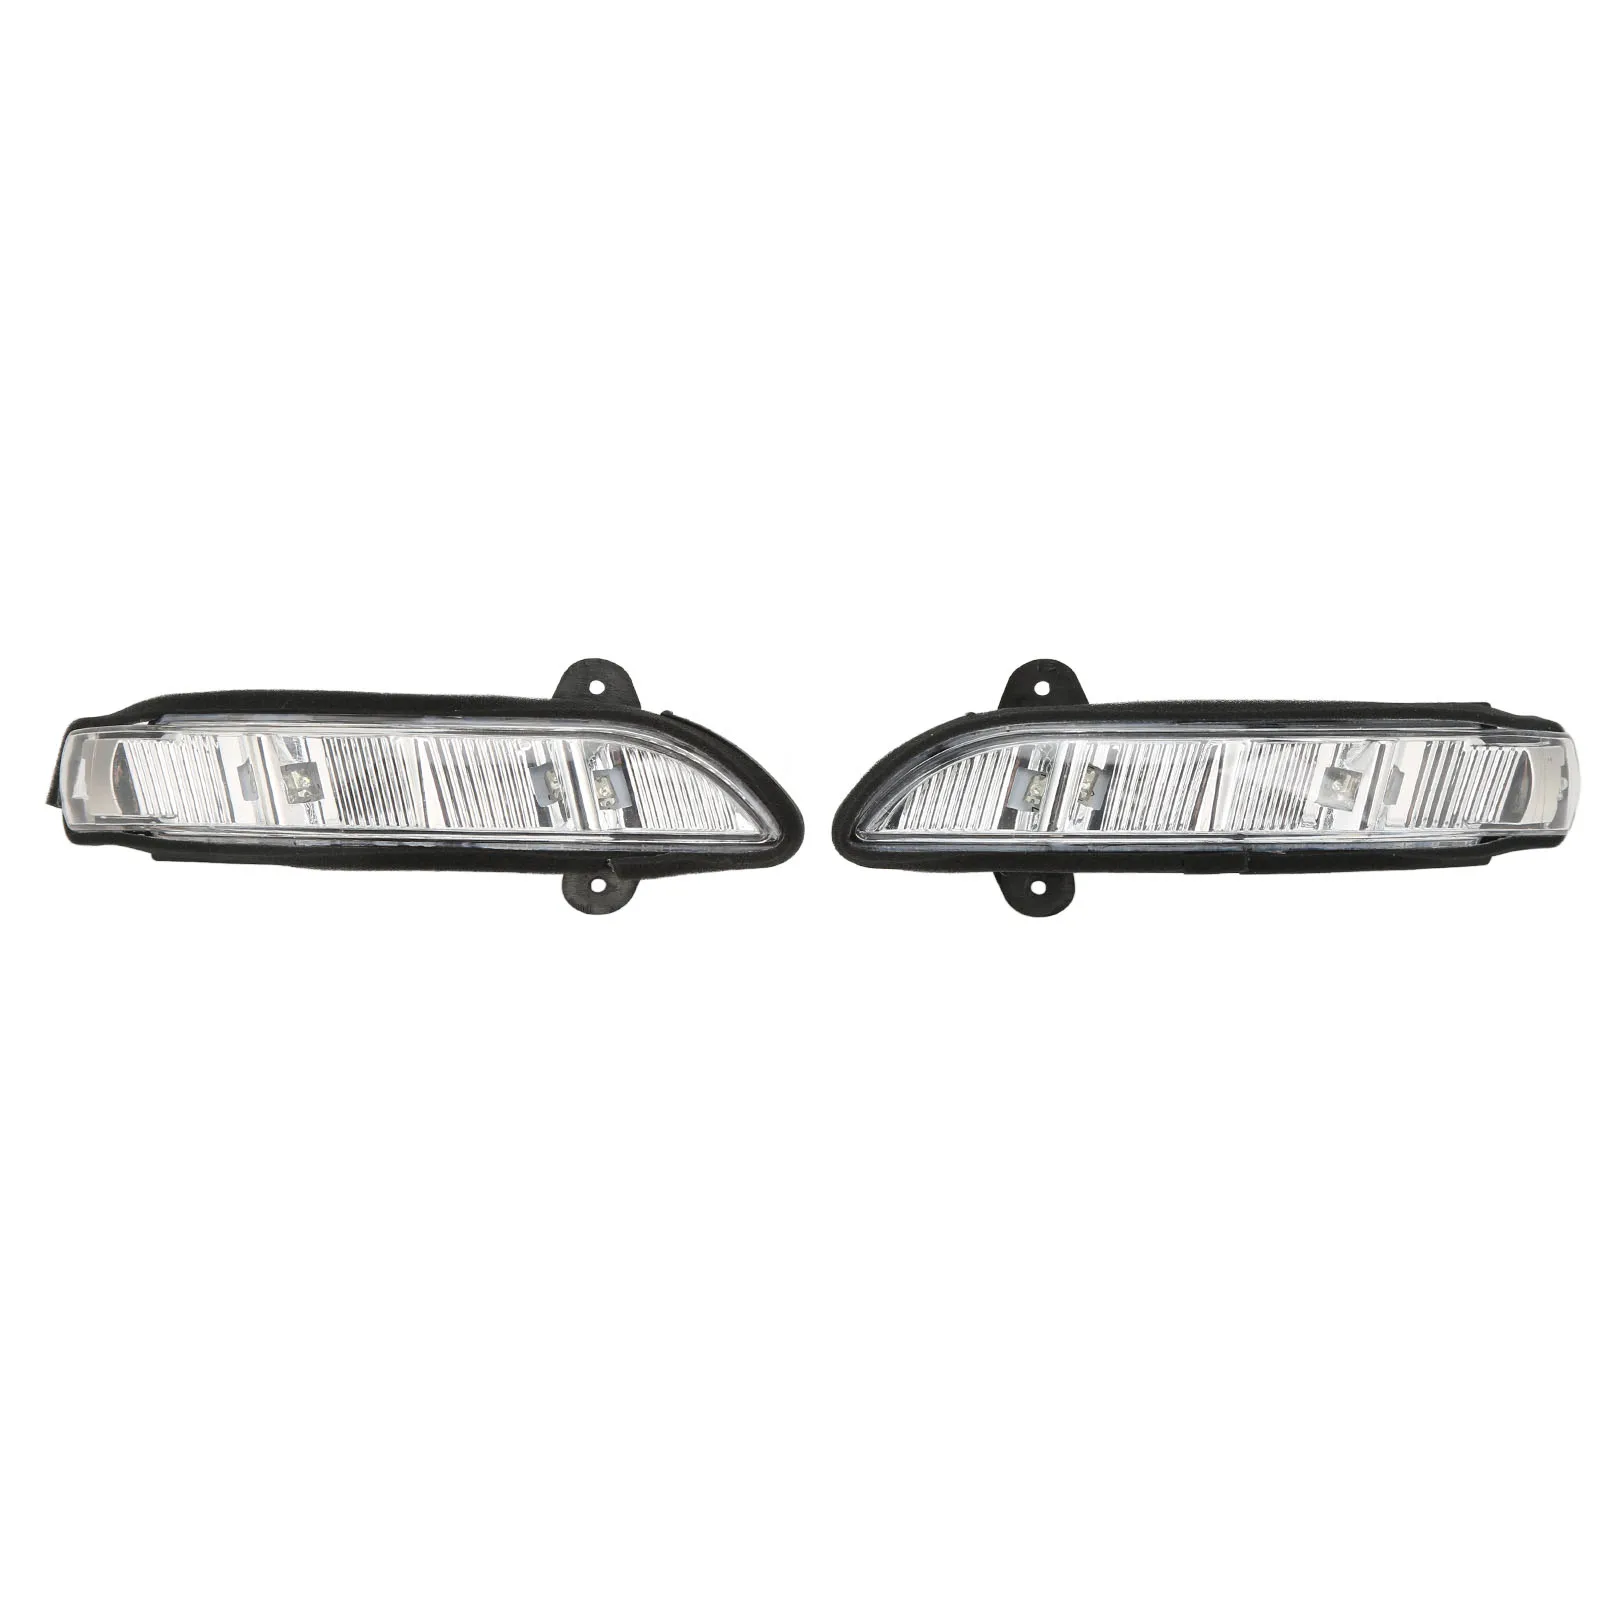 Габаритный фонарь 2198200521 Сигнальная лампа для зеркала заднего вида, Износостойкий A2198200621, левый и правый, прочный, простая установка для автомобиля 0